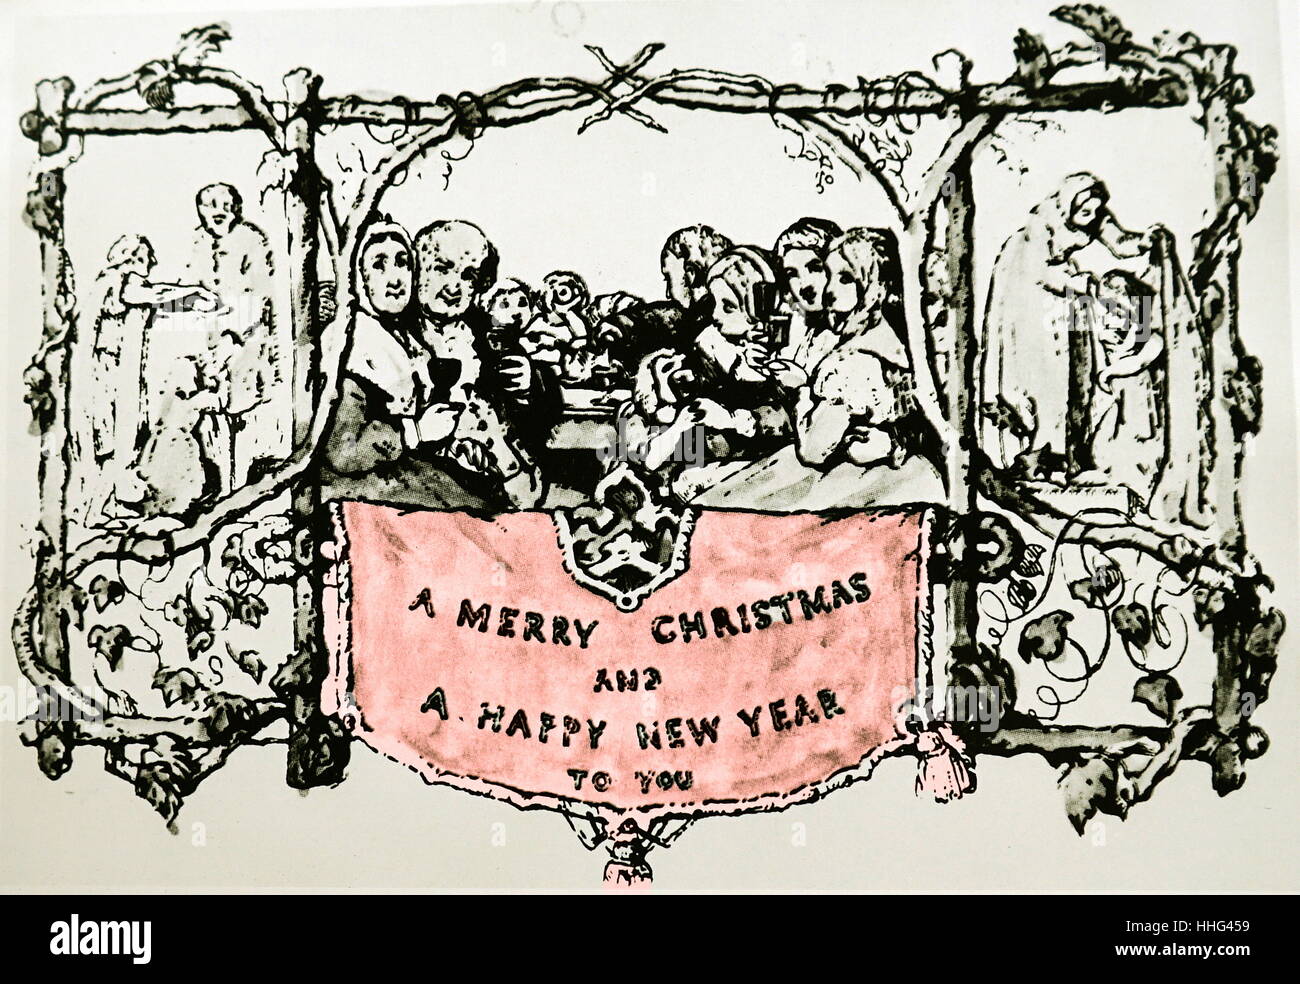 Sir Henry Cole von London konzipiert Das erste Weihnachten im Jahr 1843. Cole beauftragt, sein Freund, der Künstler John Calcott Horsley, Weihnachtspost, dass seine saisonale schreiben viele Buchstaben ersetzen würde. Horsley, eine Zukunft, Mitglied der Königlichen Akademie, illustriert eine festliche viktorianischen Familie flankiert von karitativen Bilder von Nahrung und Kleidung für die Armen. Er sein Design mit twisted Branchen Holz und Ivy gerahmt, fügte hinzu: "Ein frohes Weihnachtsfest und ein glückliches Neues Jahr", und Namensräume für Sender und Empfänger. Schätzungsweise tausend Exemplare dieser 3'x5' Karte gedruckt wurden Stockfoto